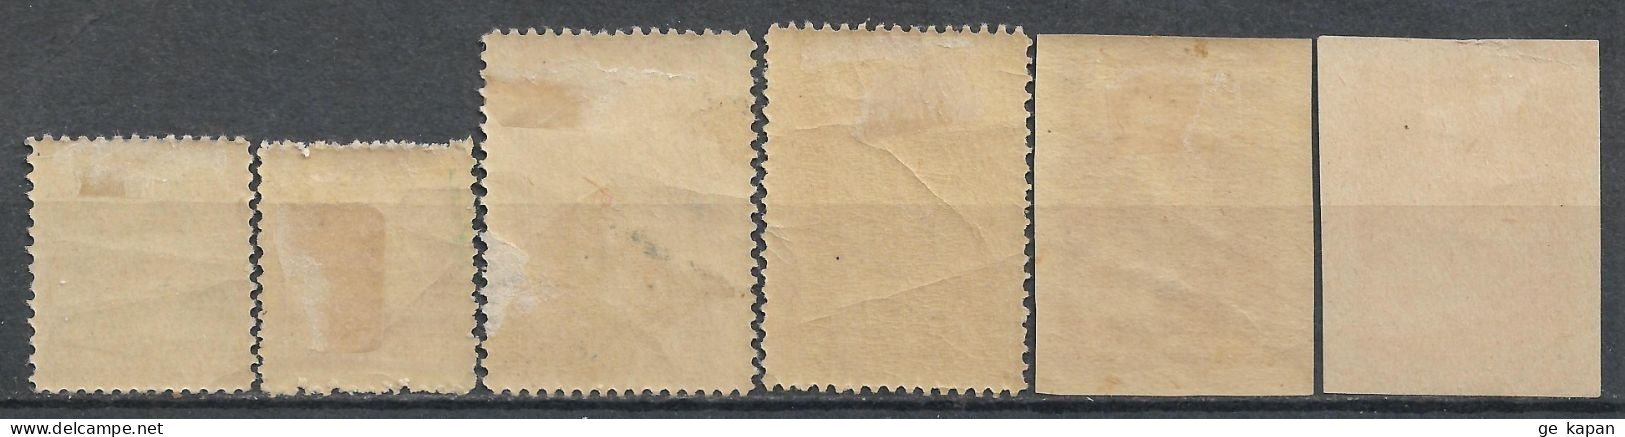 1919 GEORGIA Set Of 6 MLH Stamps (Michel # 1A,4A,7A,9A,7B.9B) - Georgia